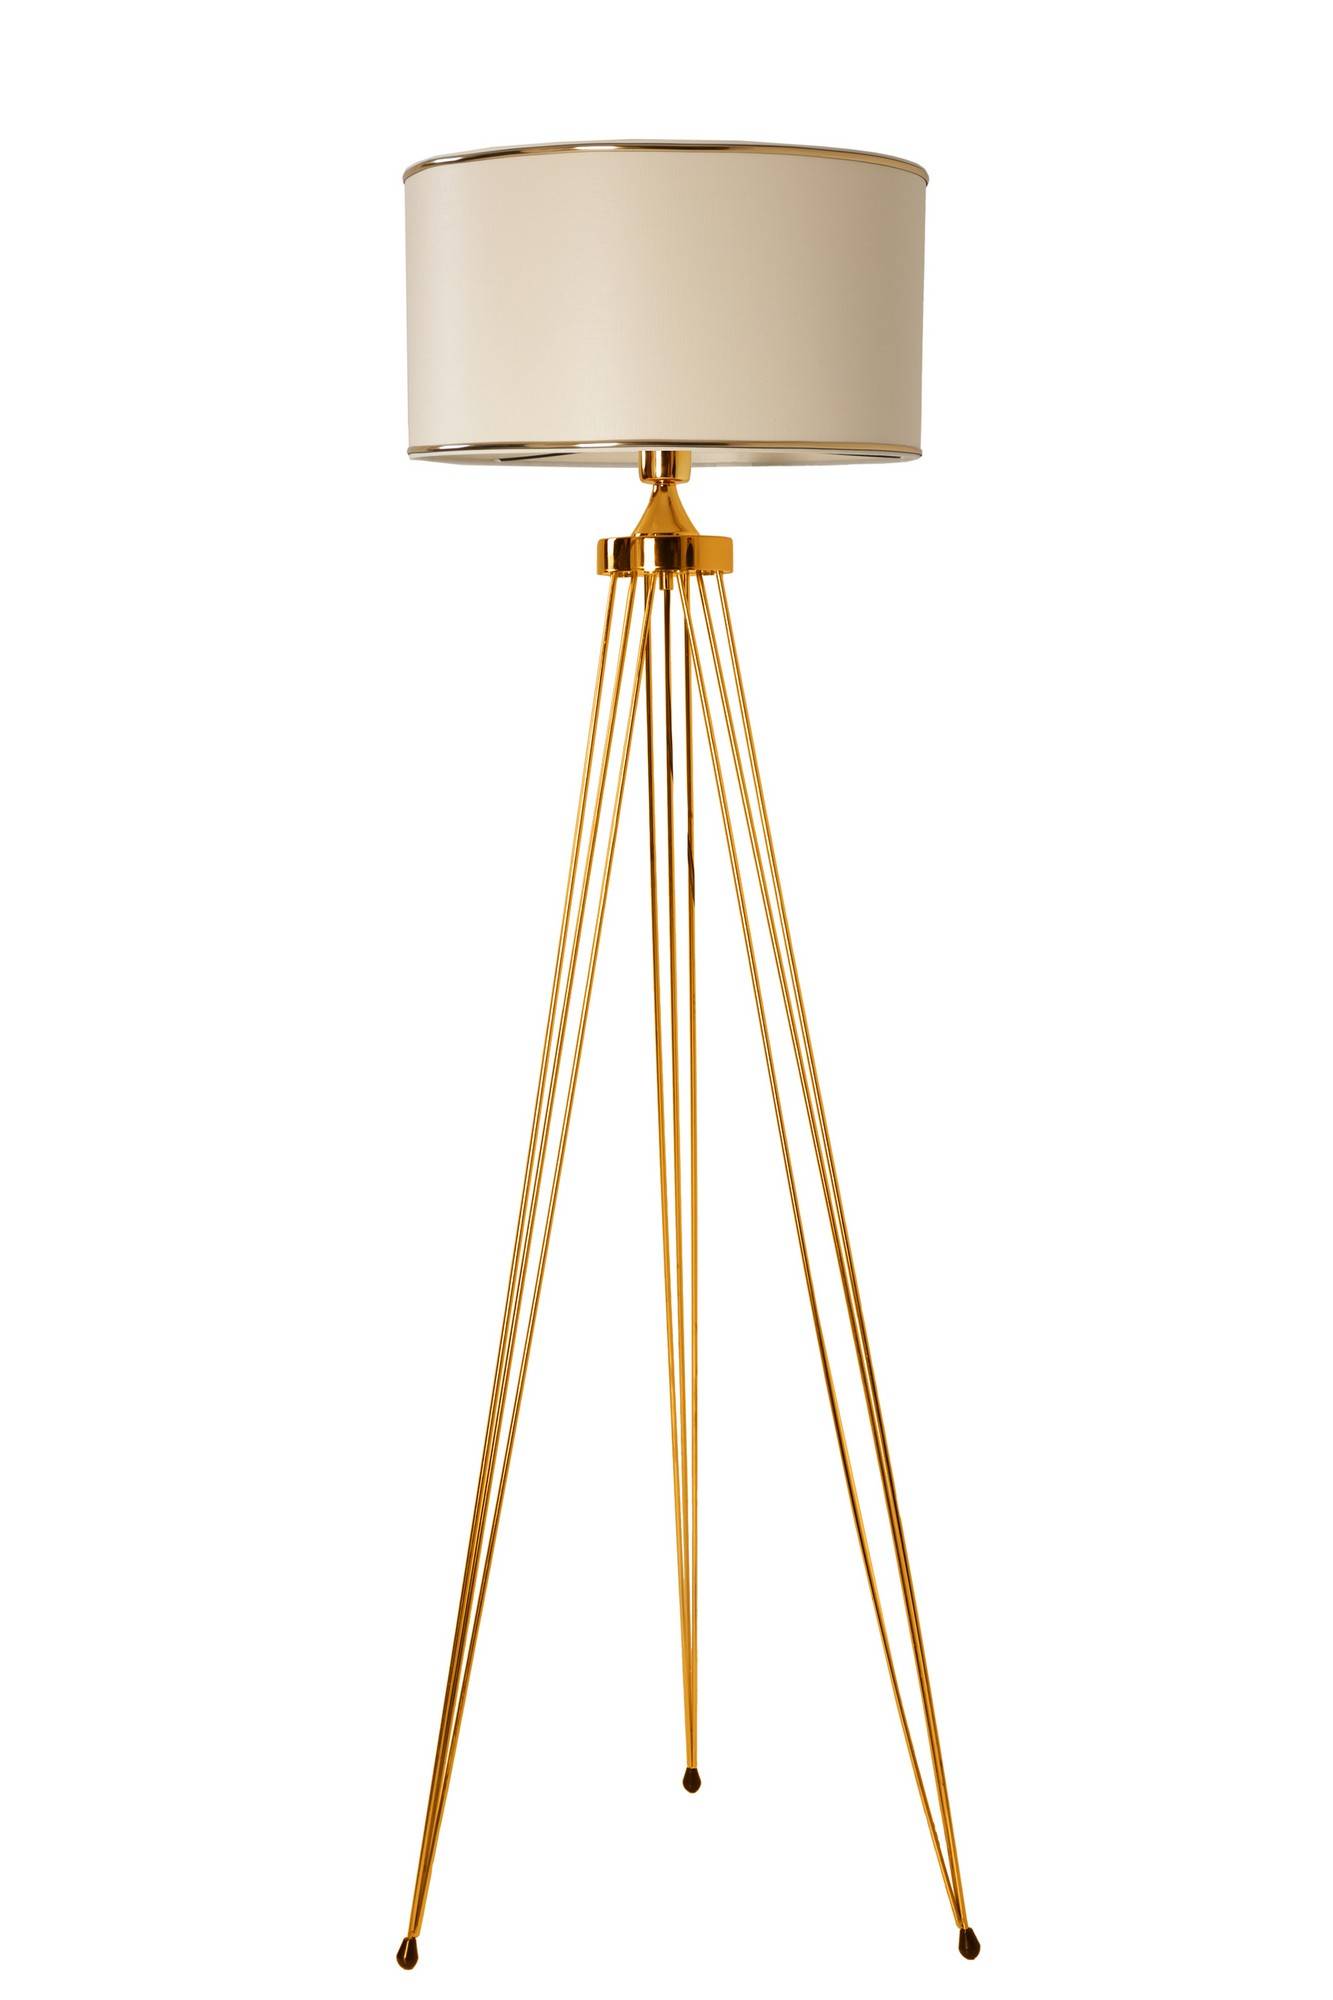 Couperin vloerlamp H155cm goud metaal en crème wit rotan